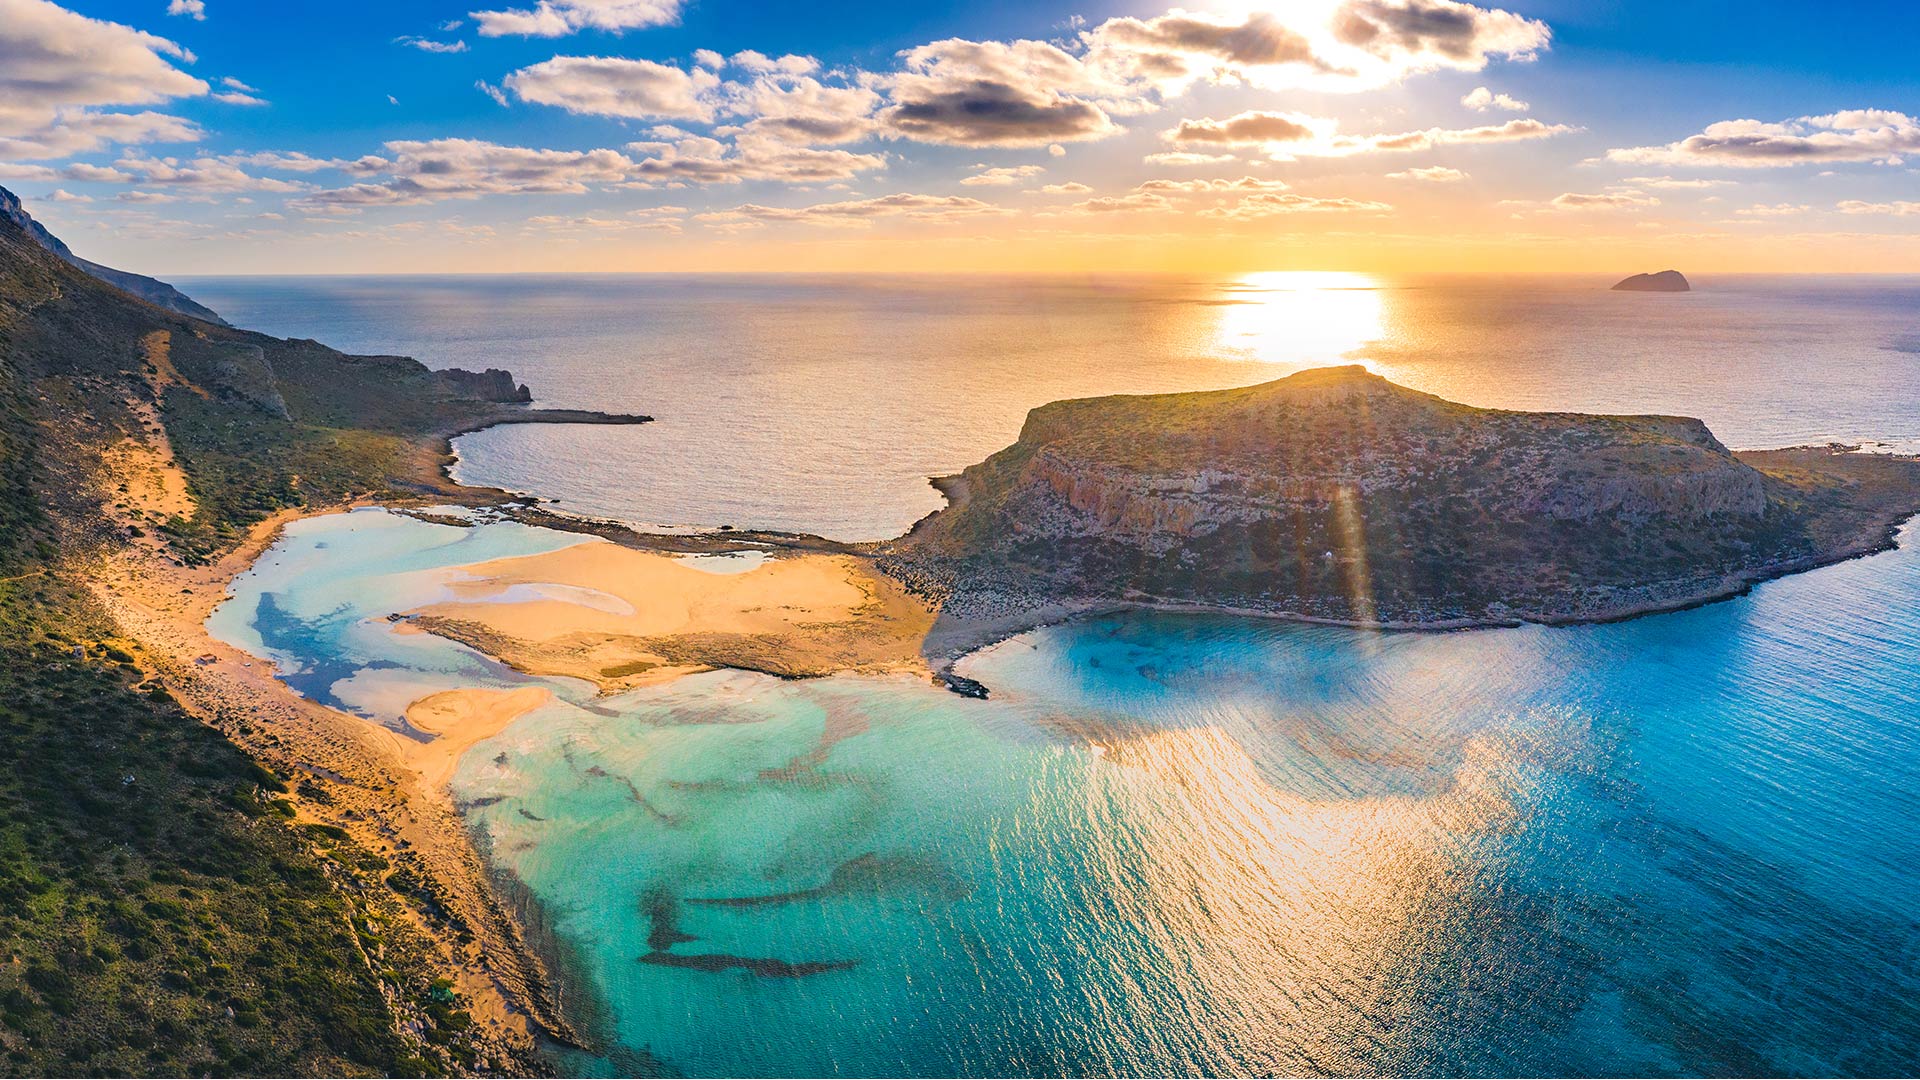 Kreta telt talloze verborgen pareltjes zoals deze rots-achtige kustlijn